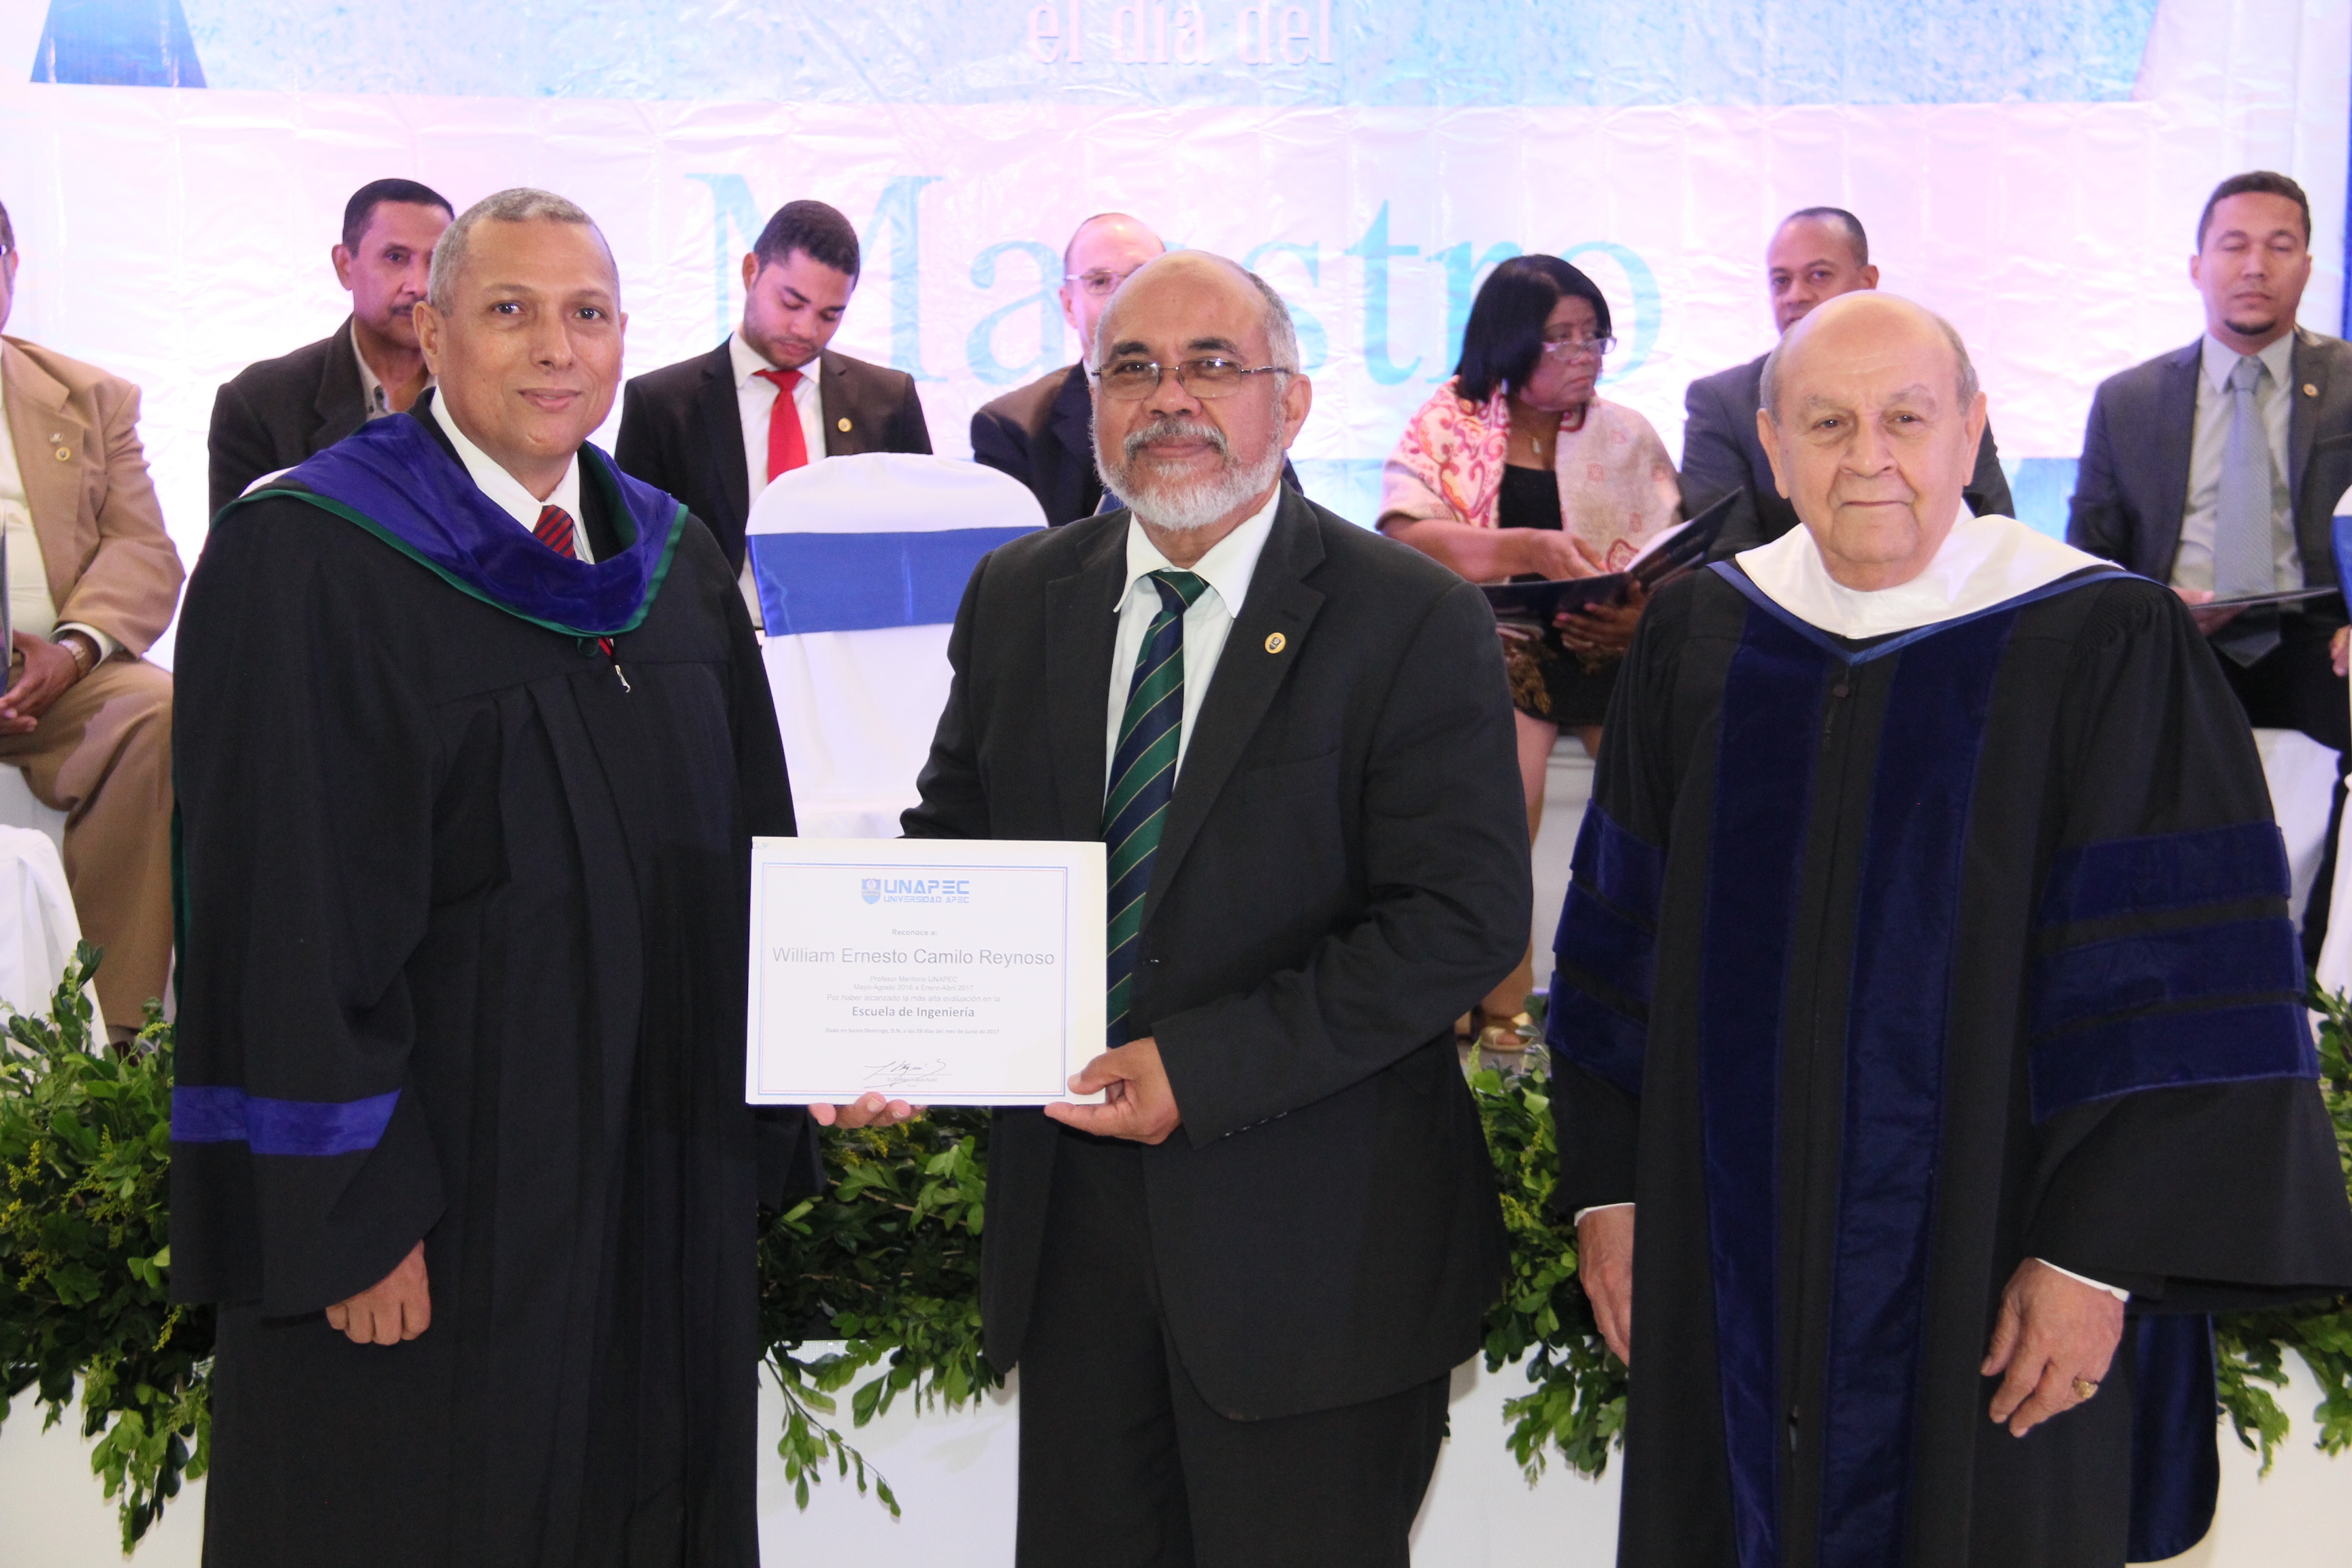 Decanato de Ingeniería de Informática-Escuela de Ingeniería: WILLIAM E. RAFAEL CAMILO REYNOSO.